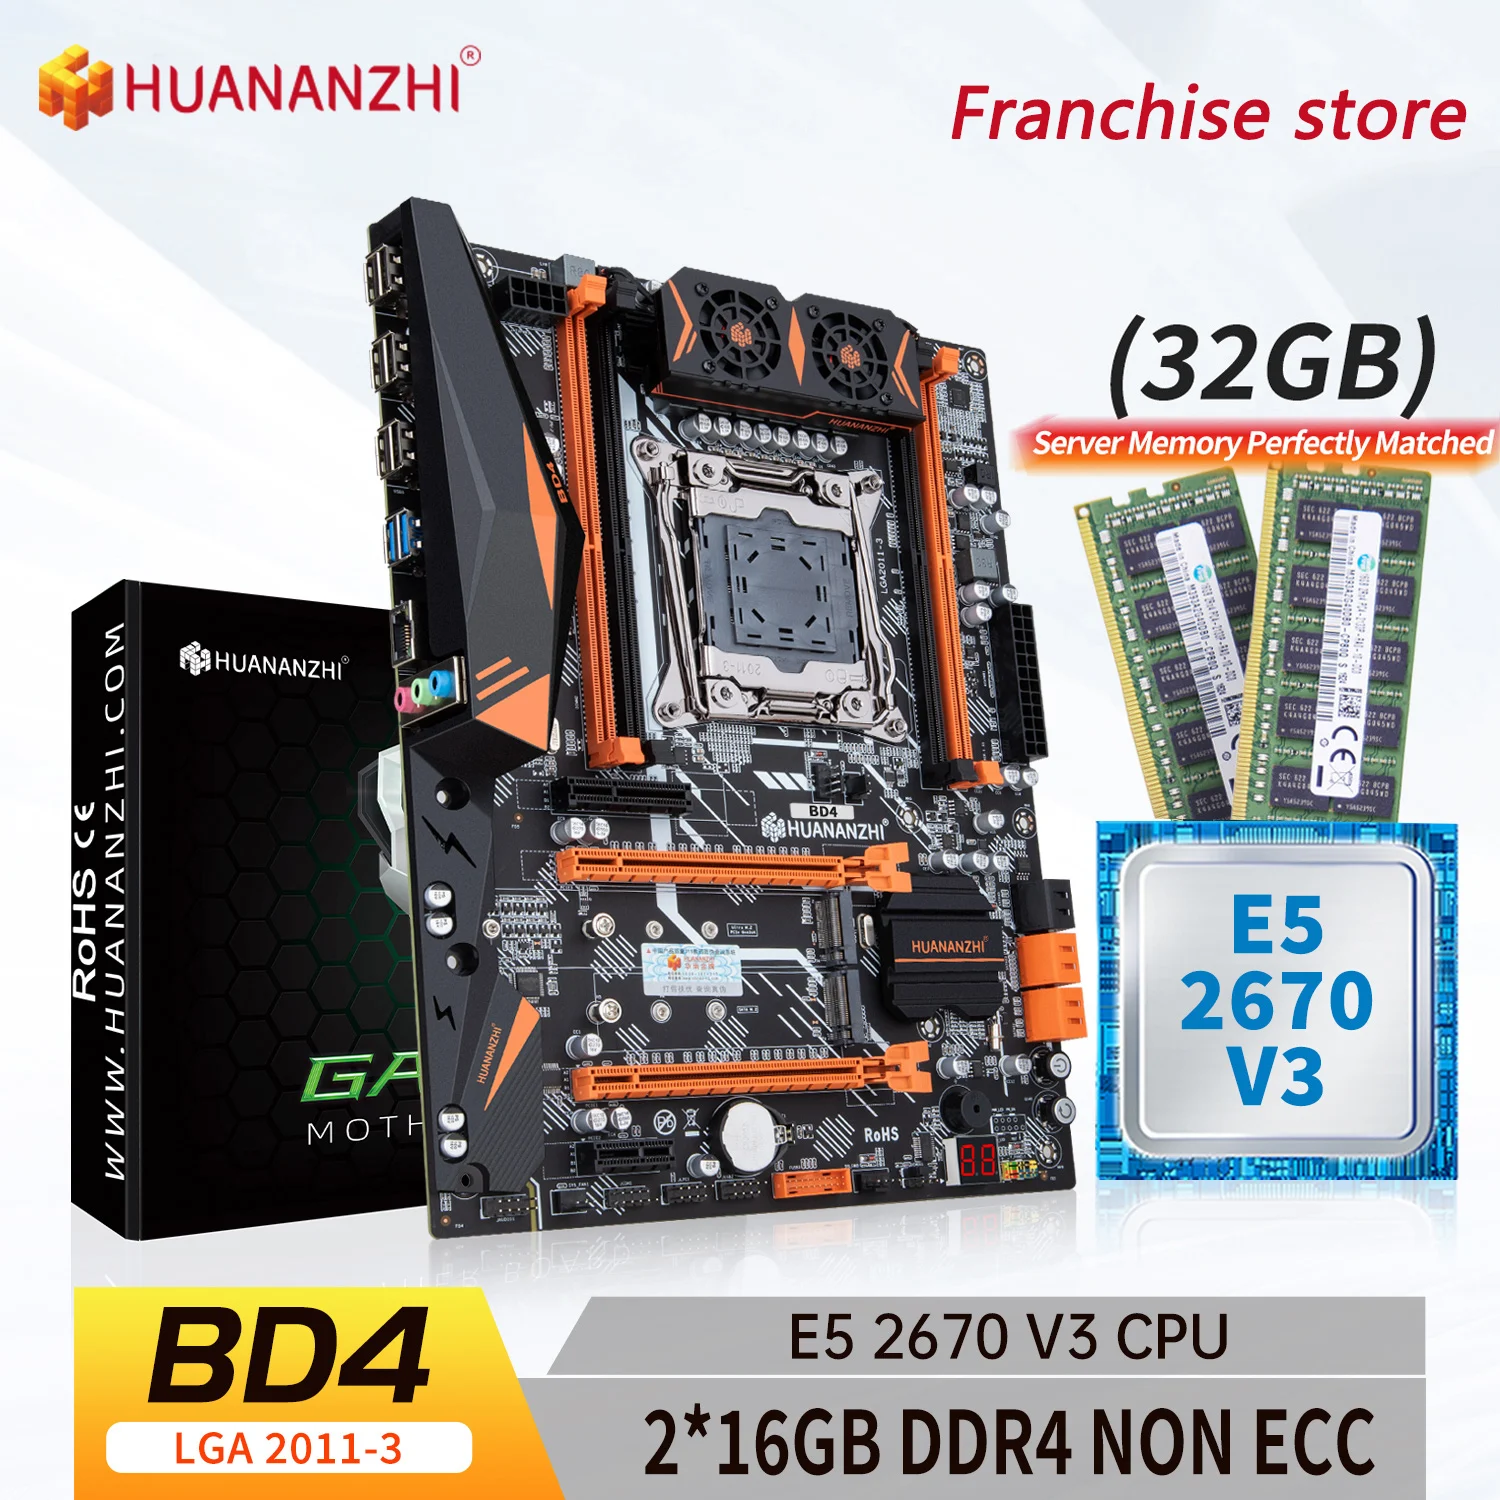 

HUANANZHI-placa base X99 BD4 LGA 2011-3 XEON X99, placa base con Intel E5 2670 v3 con 2x16G DDR4, kit combinado de memoria de NO